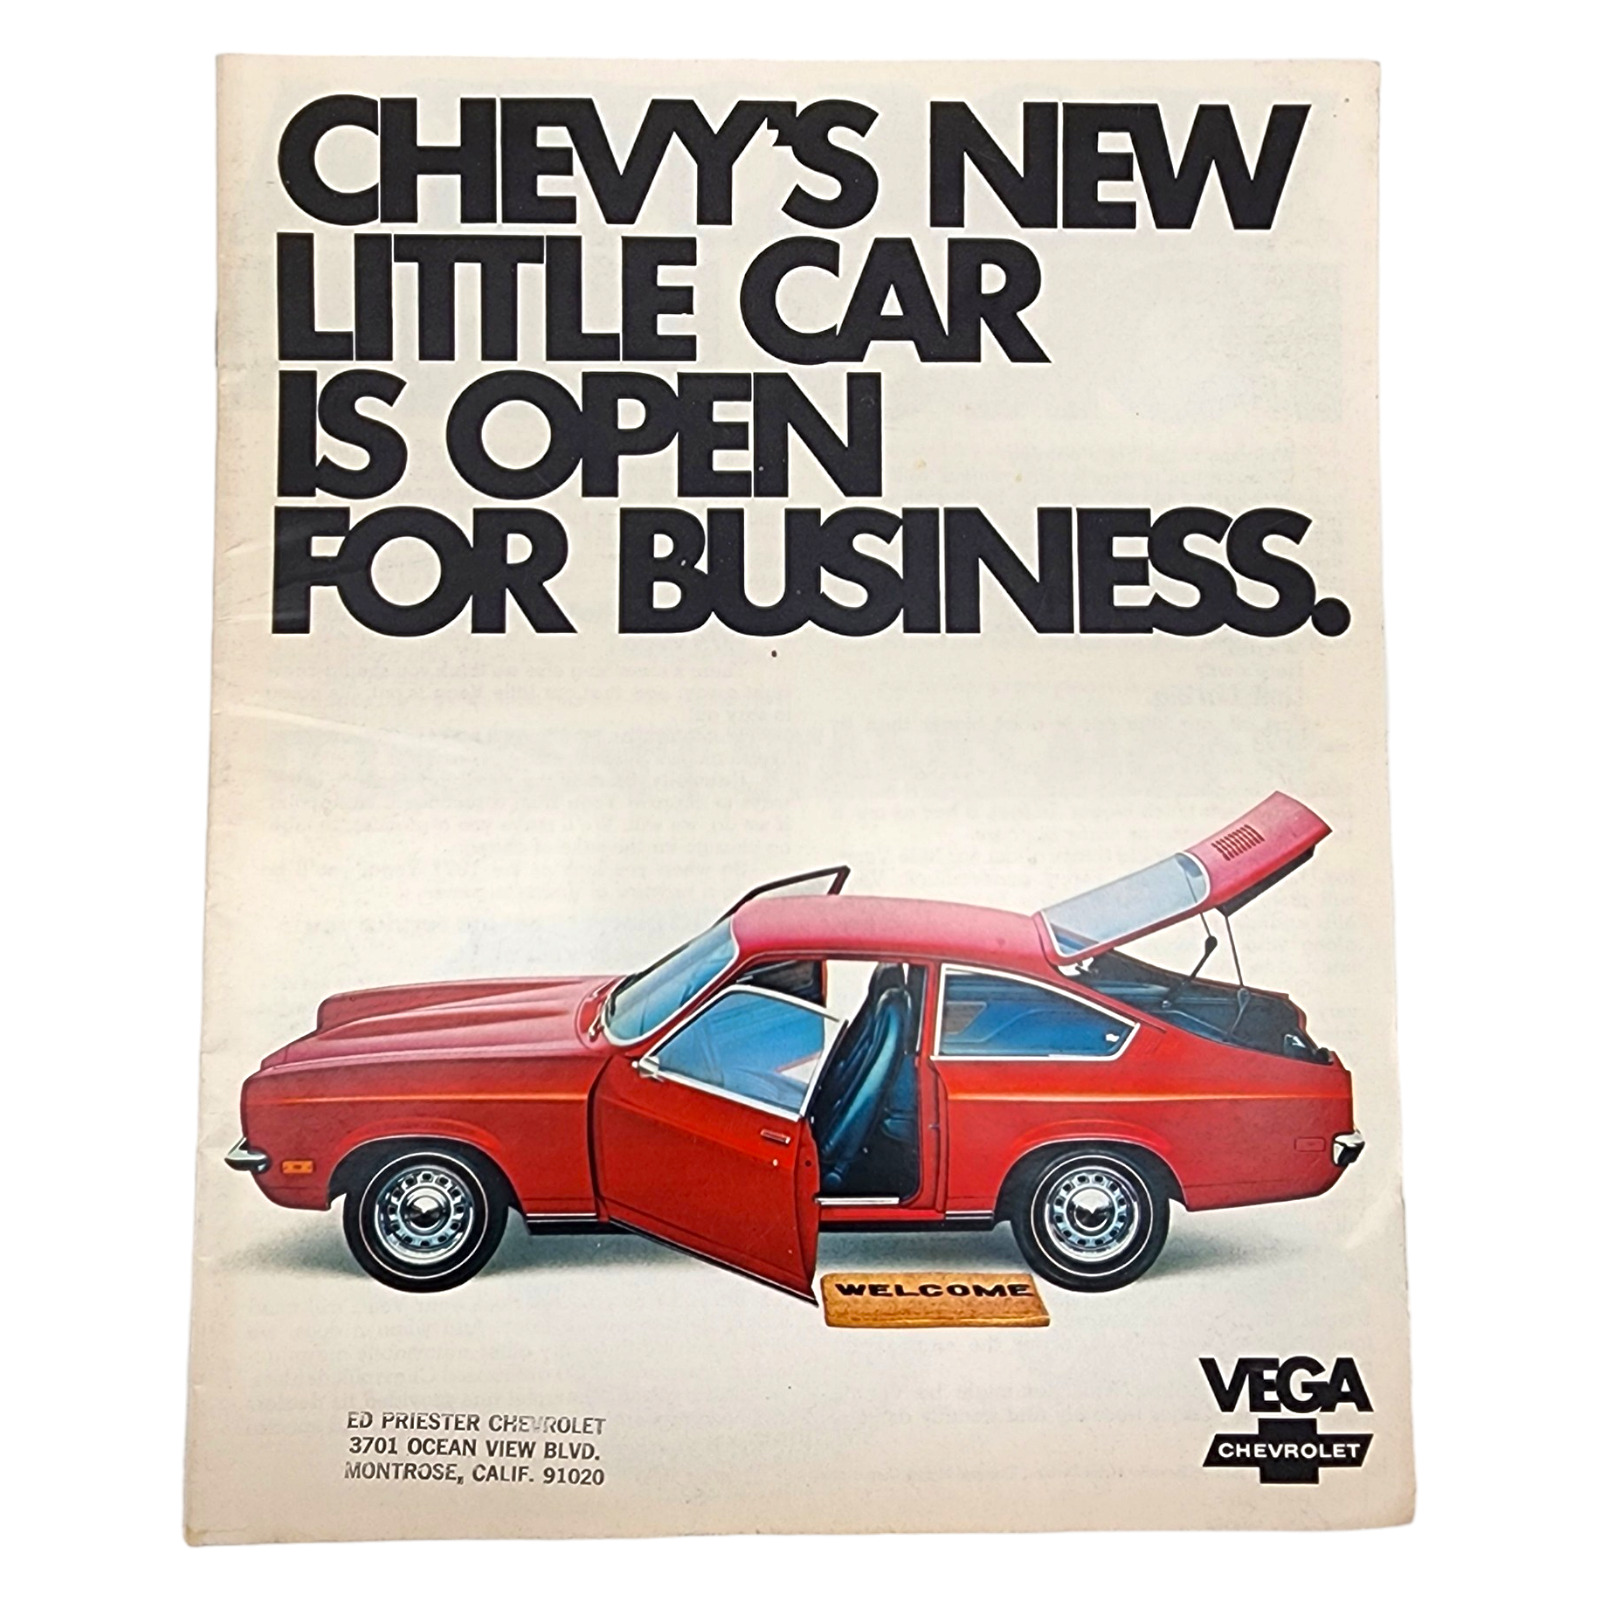 Chevrolet 1971 Vega Advertisement Vintage Car Dealer Sales Brochure